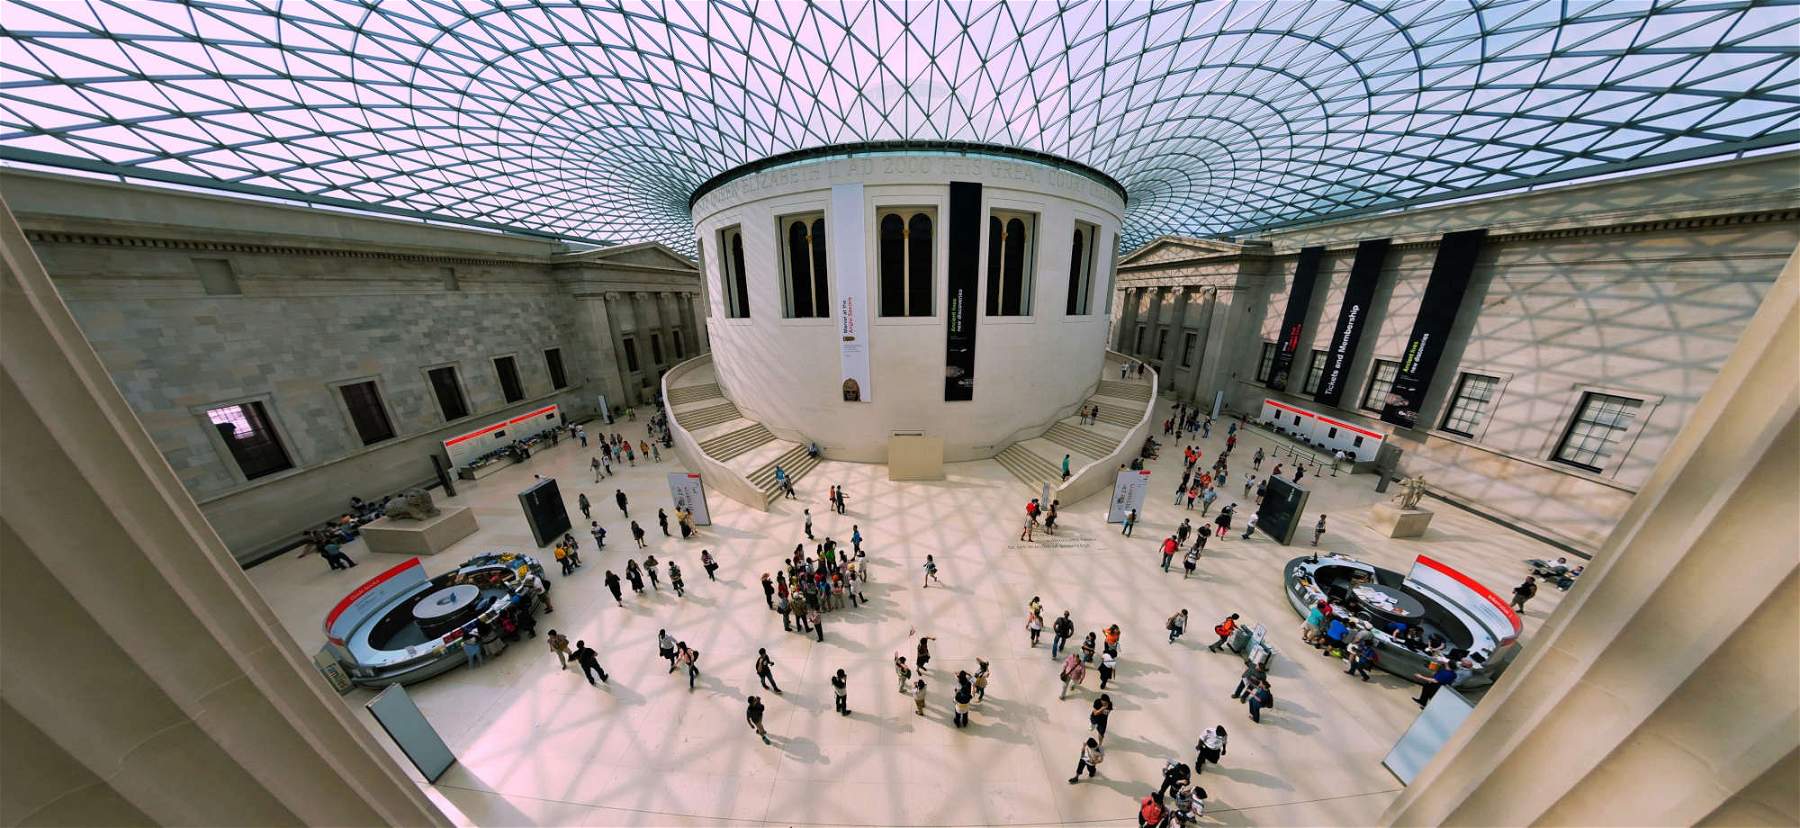 Pas seulement britanniques : des centaines d'objets disparaissent des musées britanniques